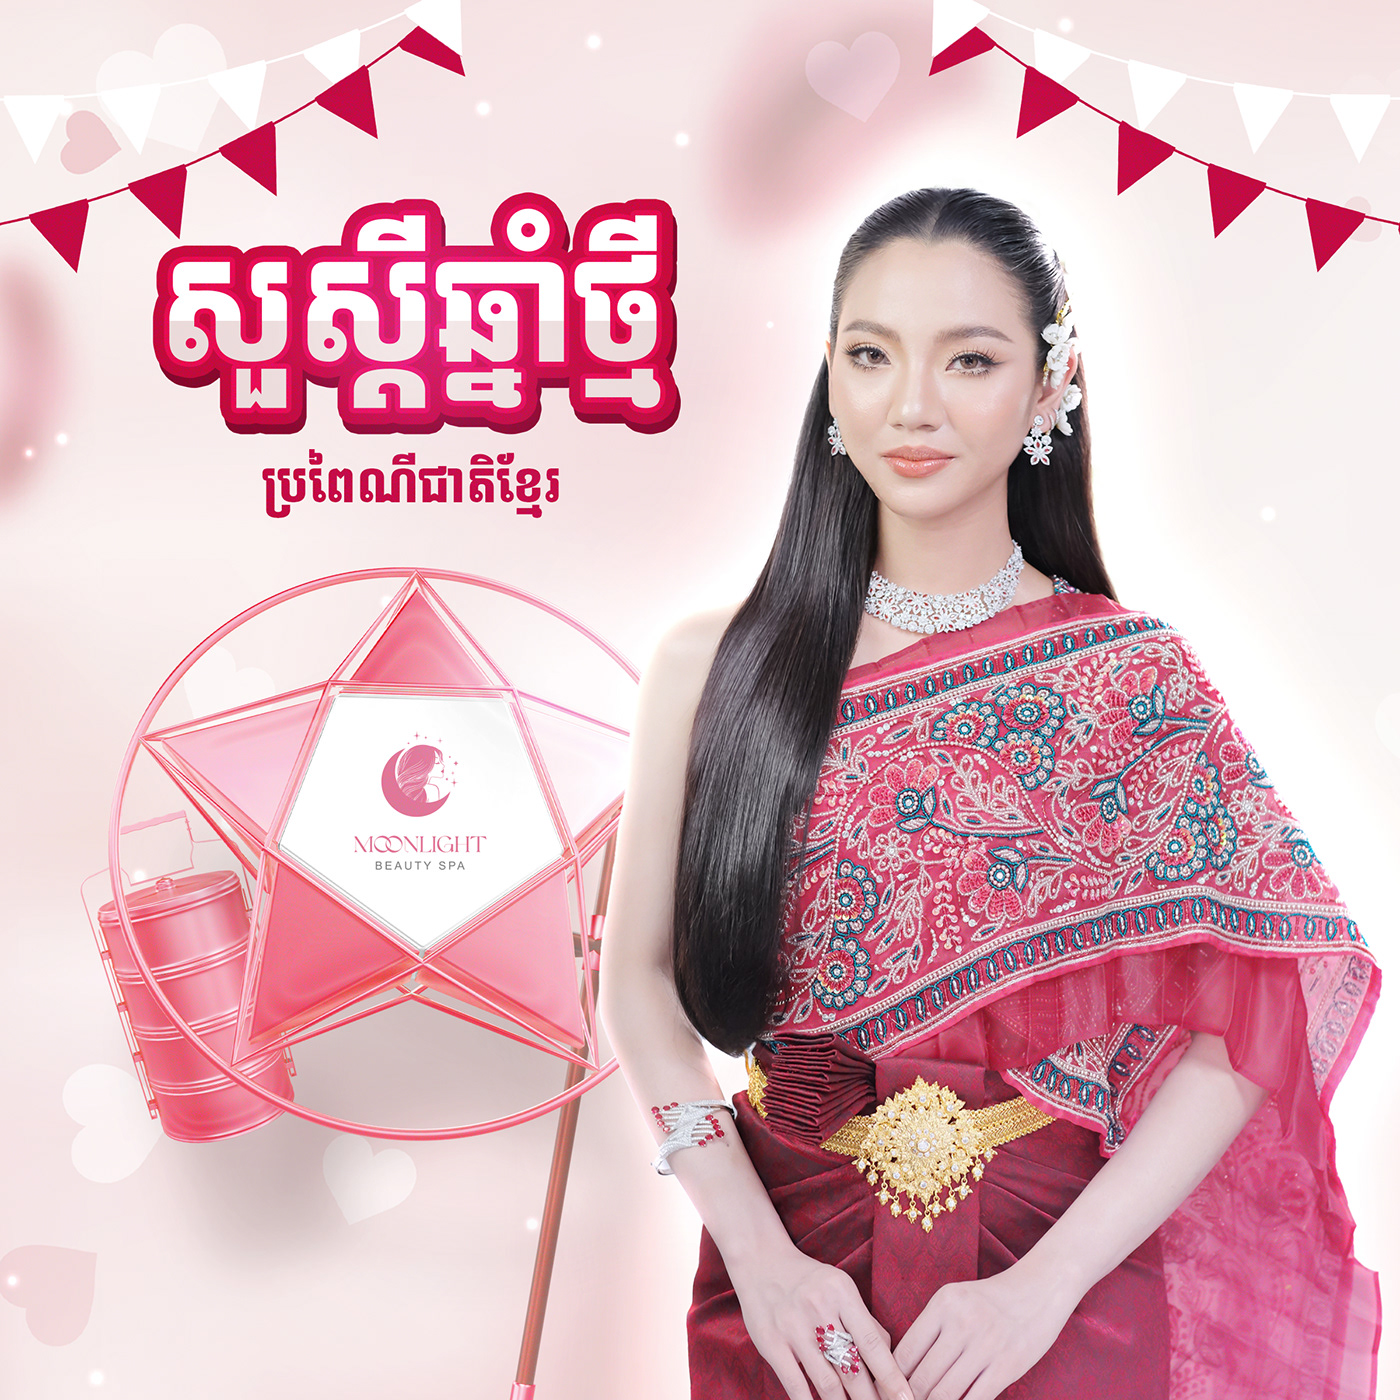 design Graphic Designer Social media post khmer poster សួស្តីឆ្នាំថ្មី khmer new year ចូលឆ្នាំខ្មែរ Happy Khmer New Year Poster Design សួស្ដីឆ្នាំថ្មី ២០២៤